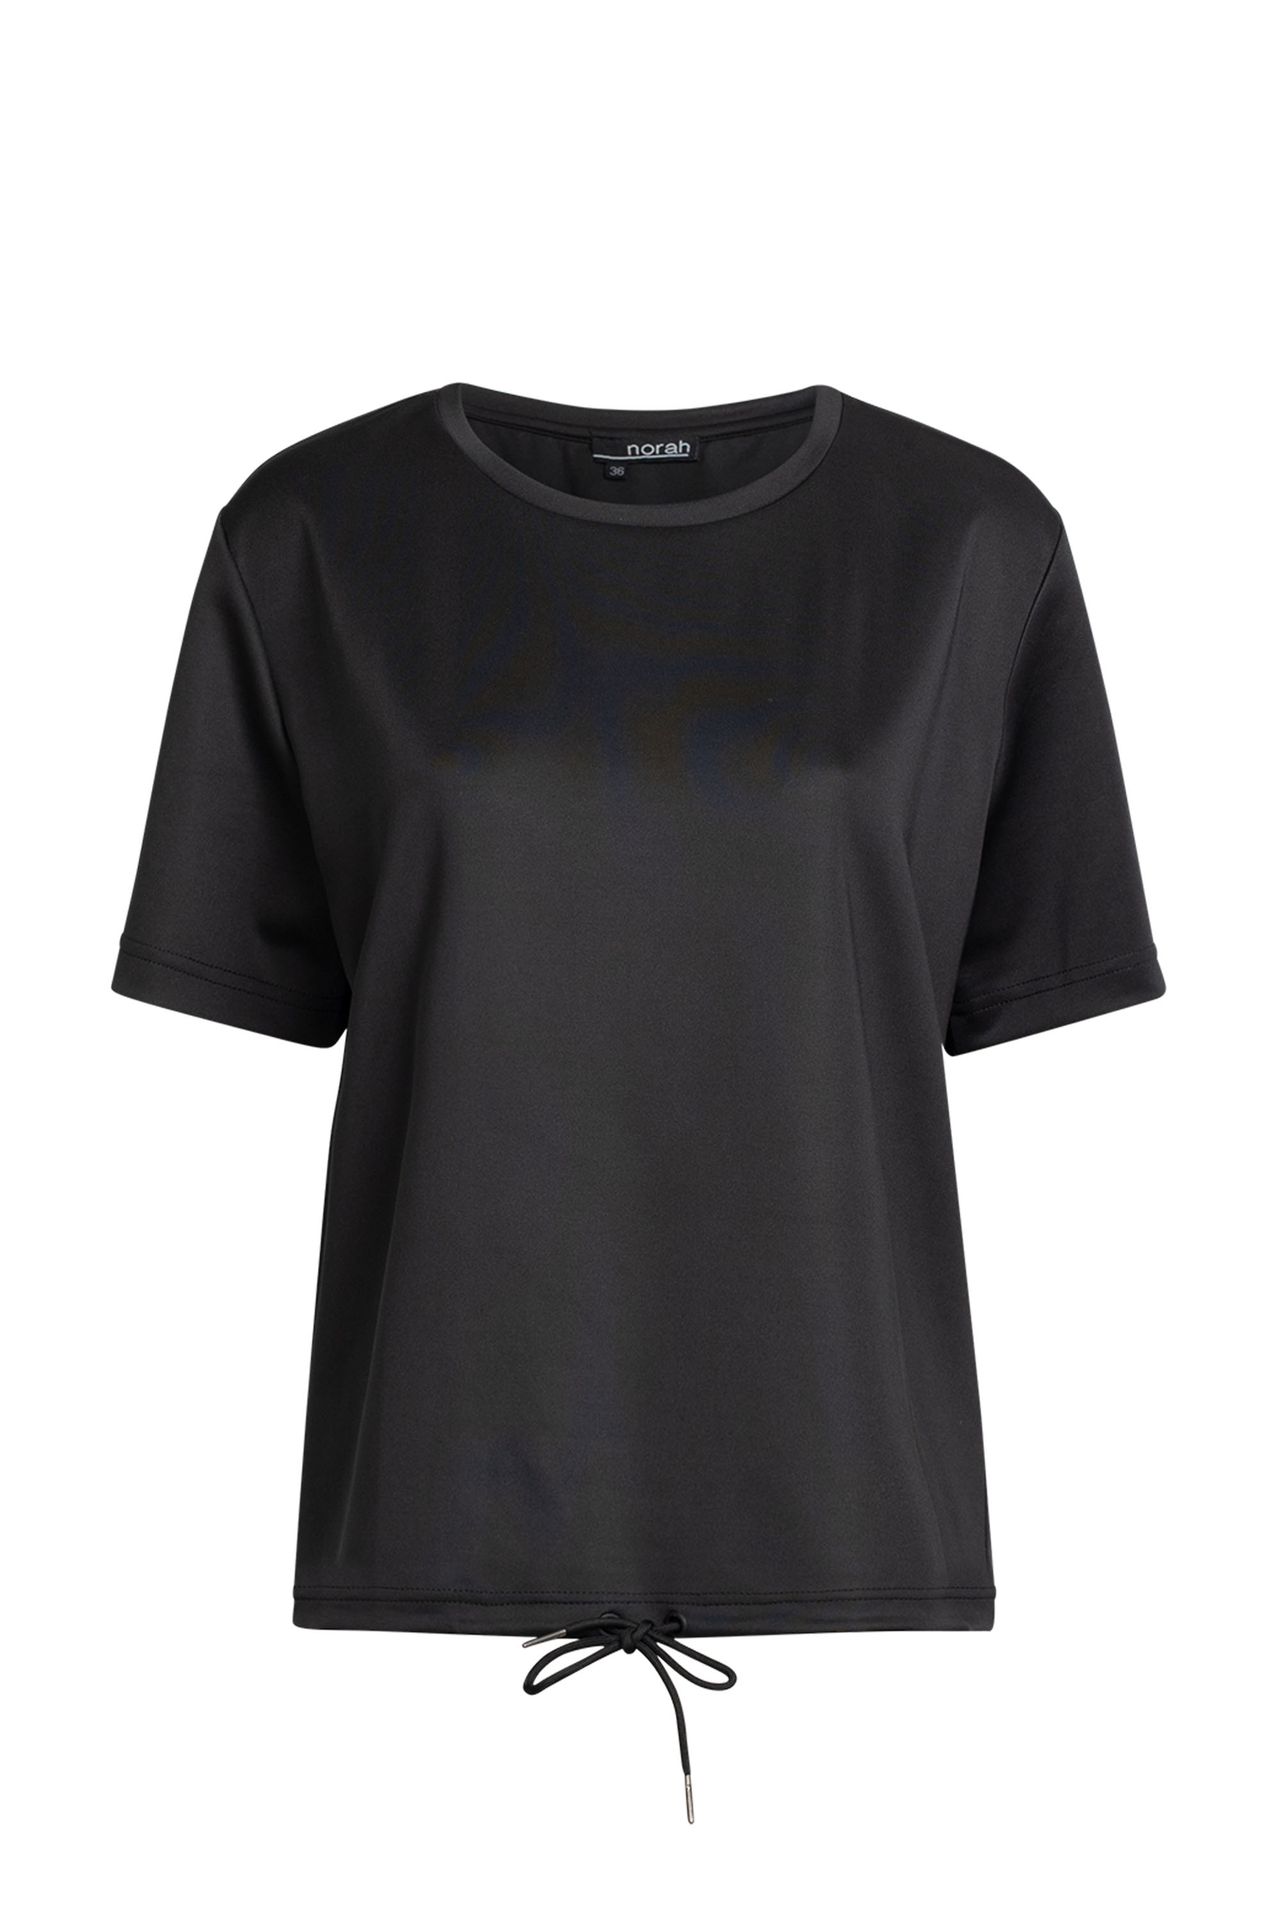 Norah Shirt - Activewear black 211632-001